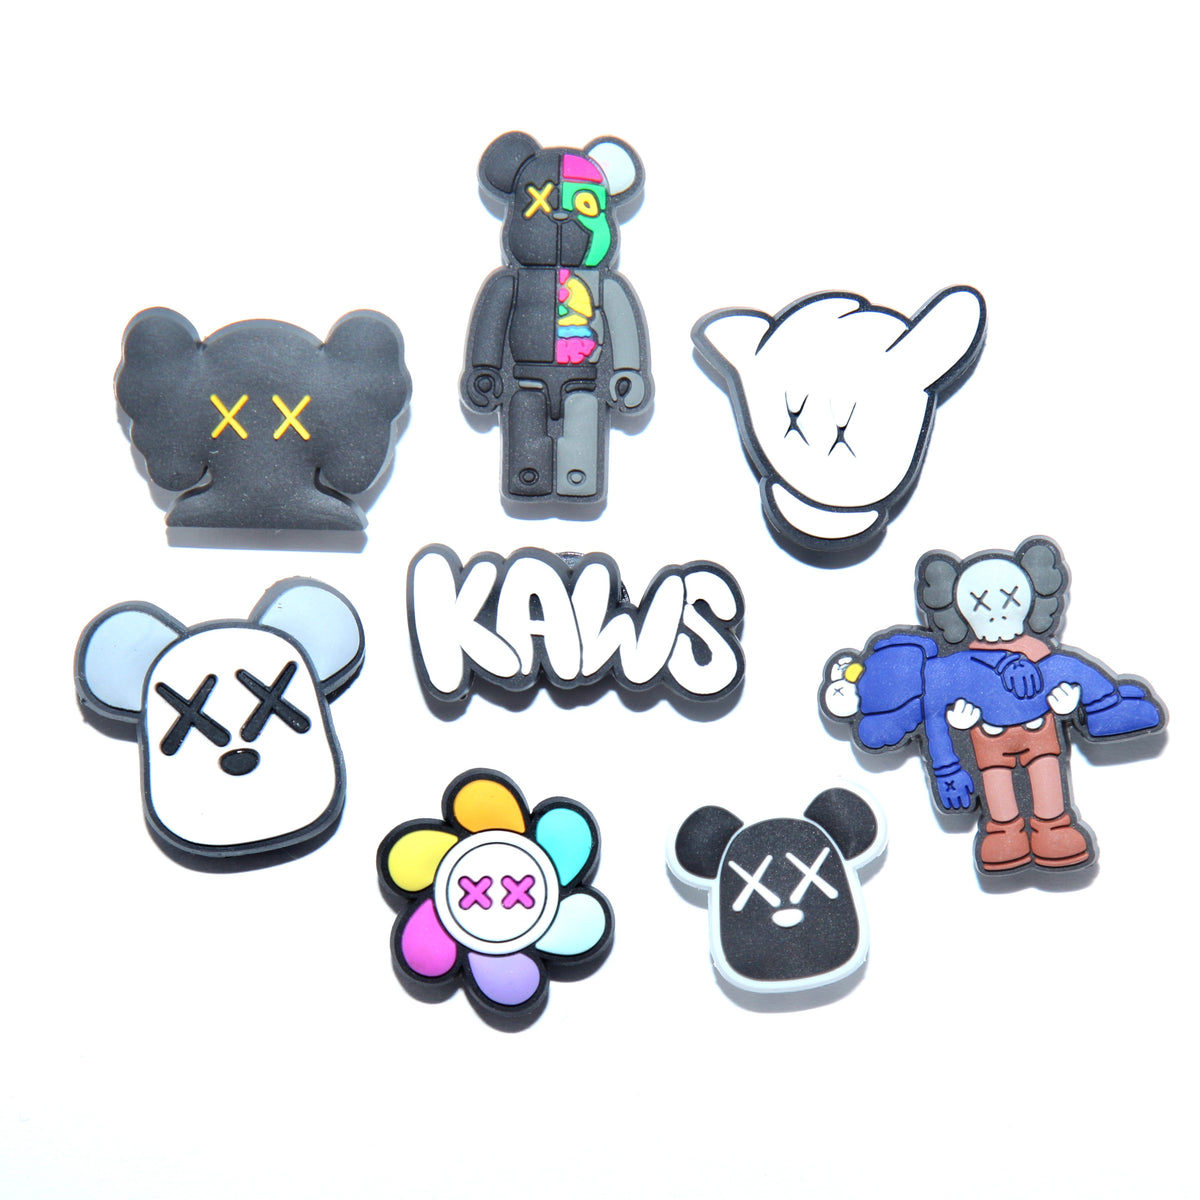 Kaws Stickers 